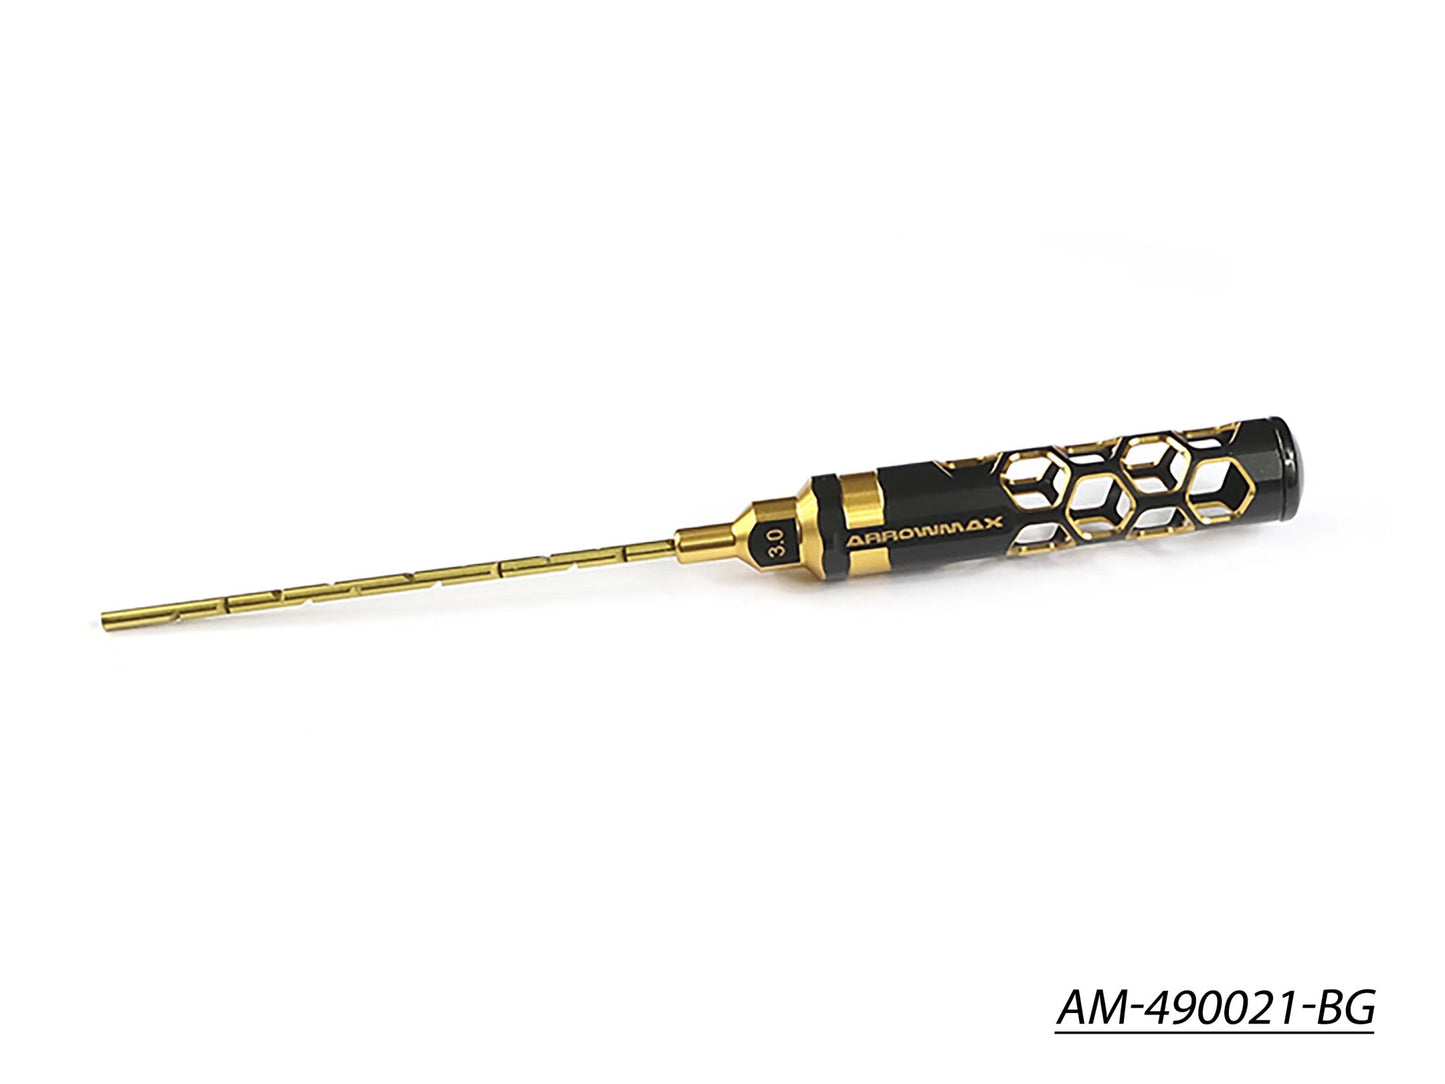 Arm Reamer 3.0 X 120MM Black Golden (AM-490021-BG)